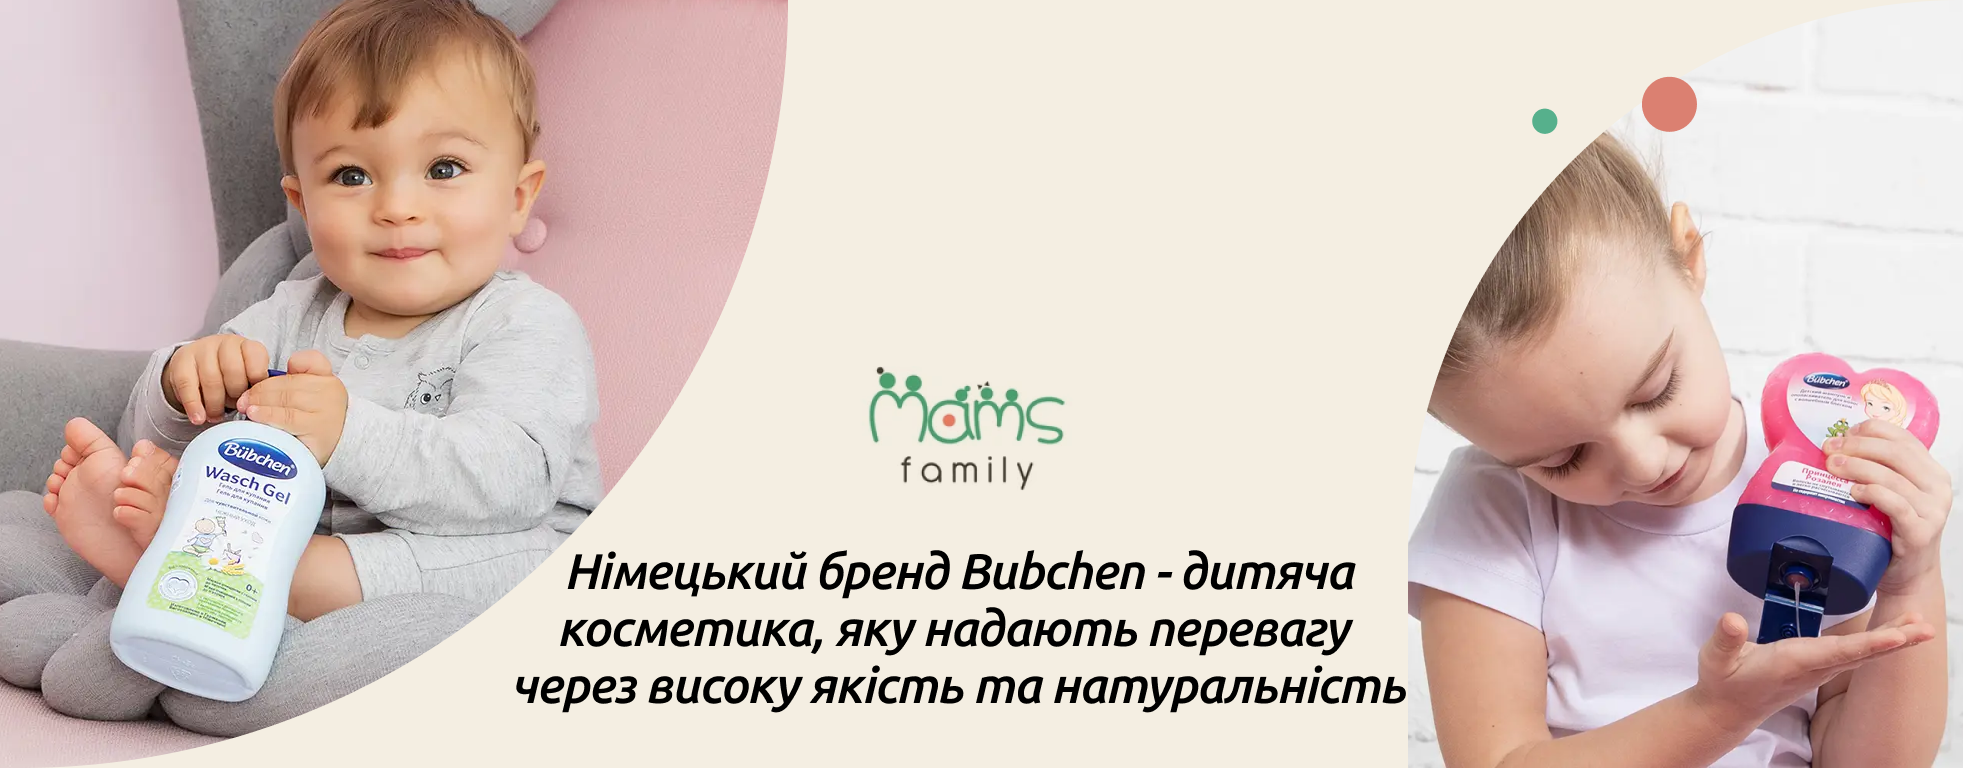 купити дитячу косметику Бюбхен mams family